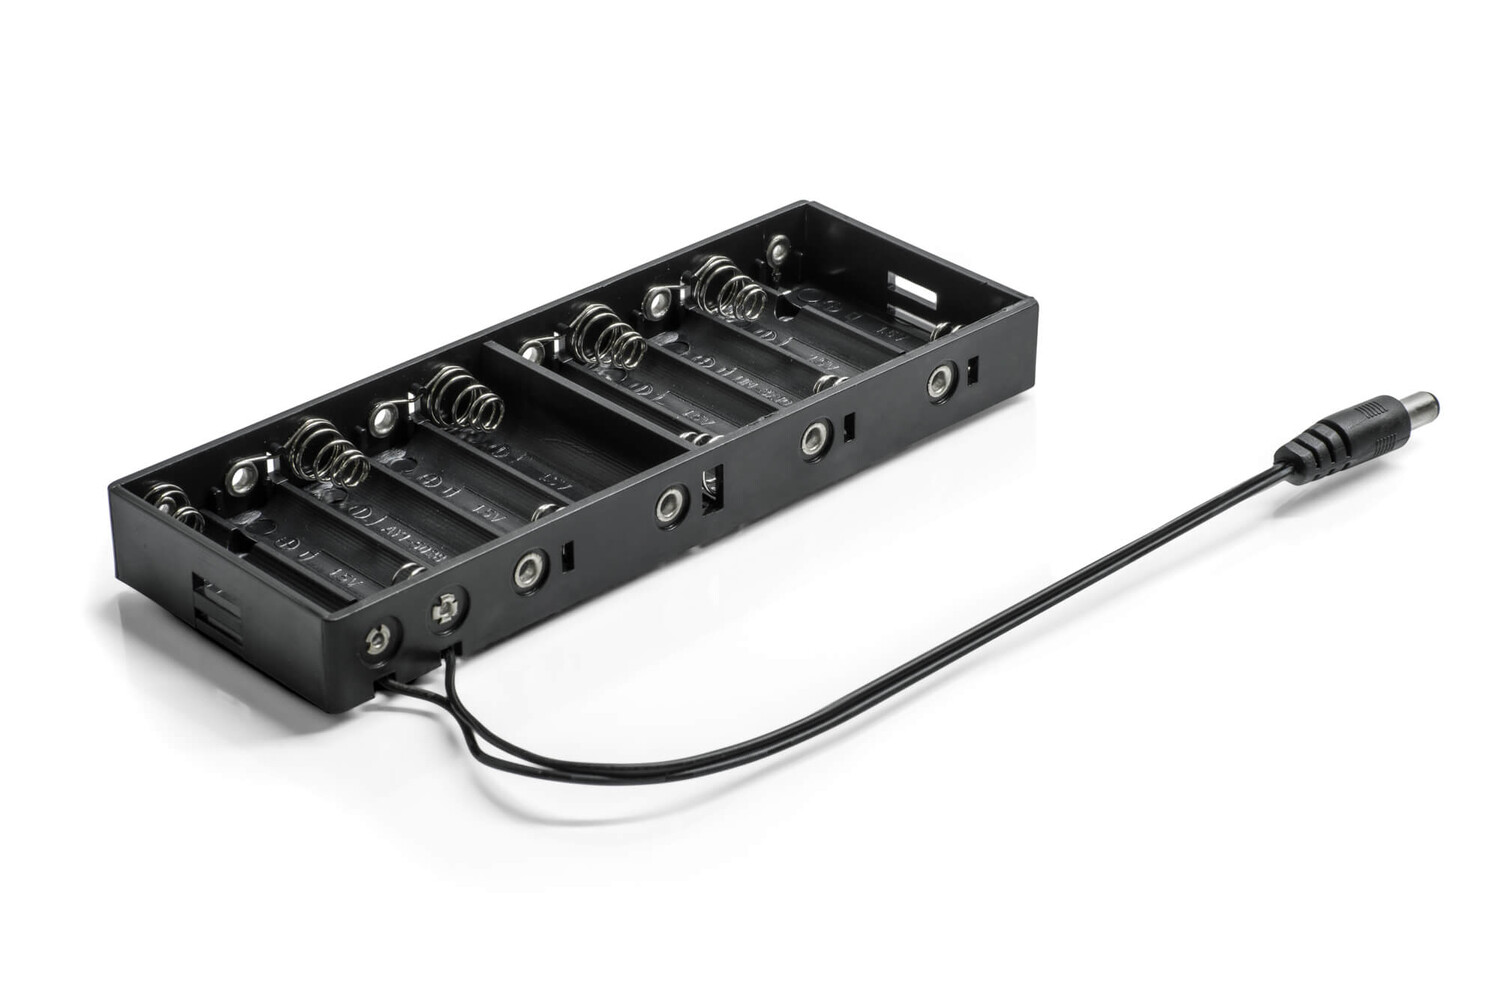 LED Universum Batteriebox für mobile LED Anwendungen mit 10 Steckplätzen - tragbar, praktisch, effizient